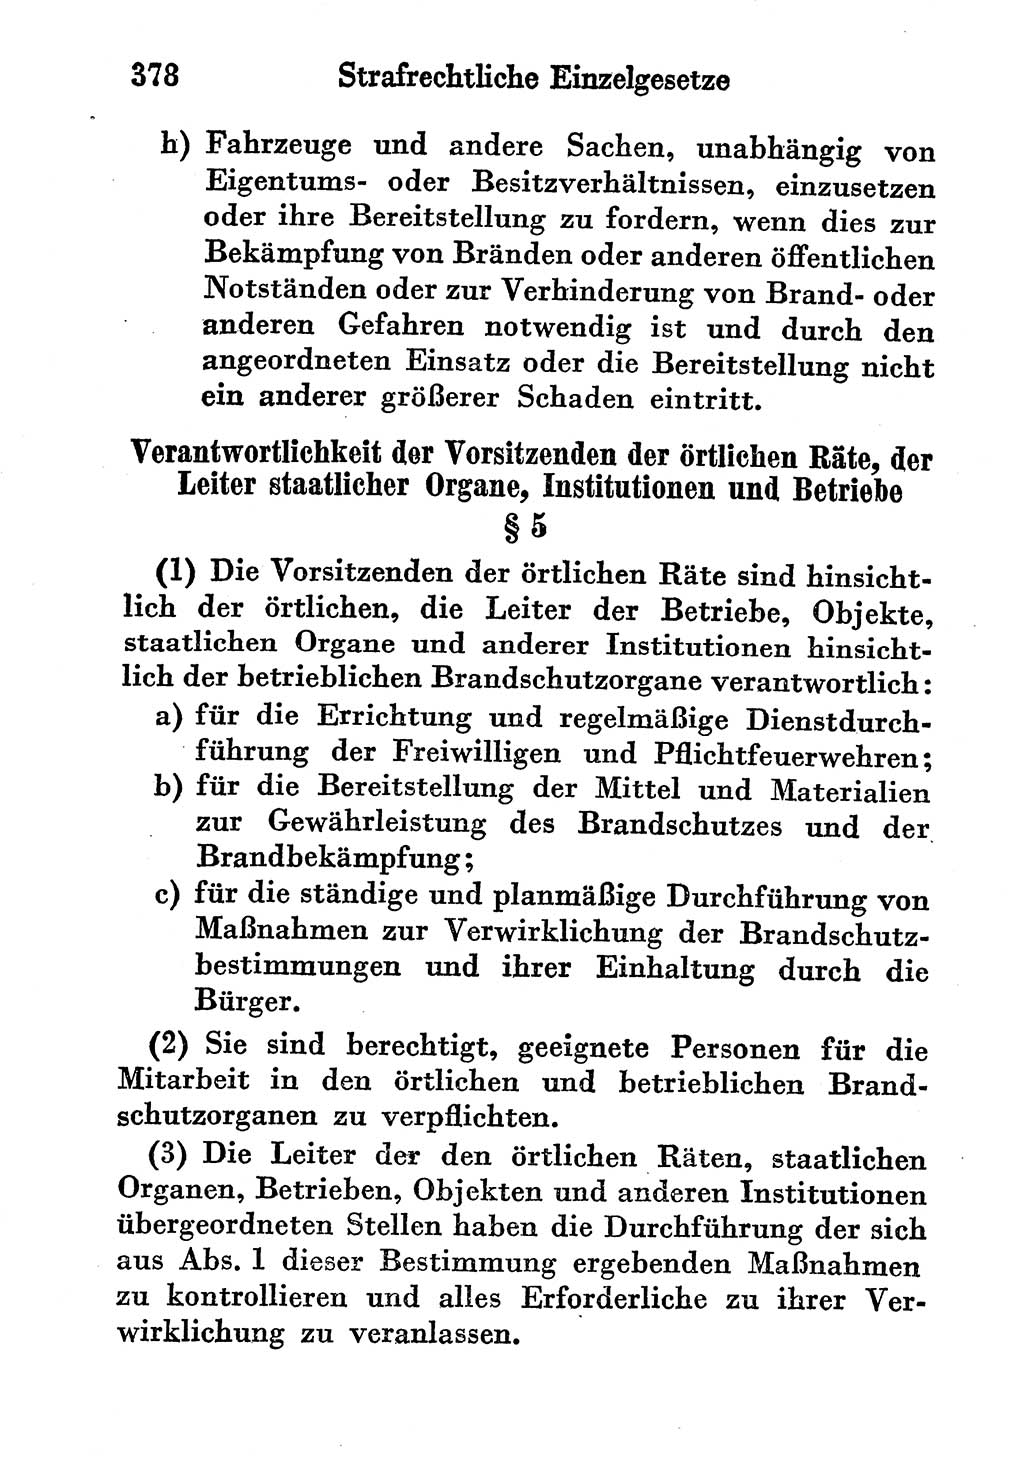 Strafgesetzbuch (StGB) und andere Strafgesetze [Deutsche Demokratische Republik (DDR)] 1956, Seite 378 (StGB Strafges. DDR 1956, S. 378)